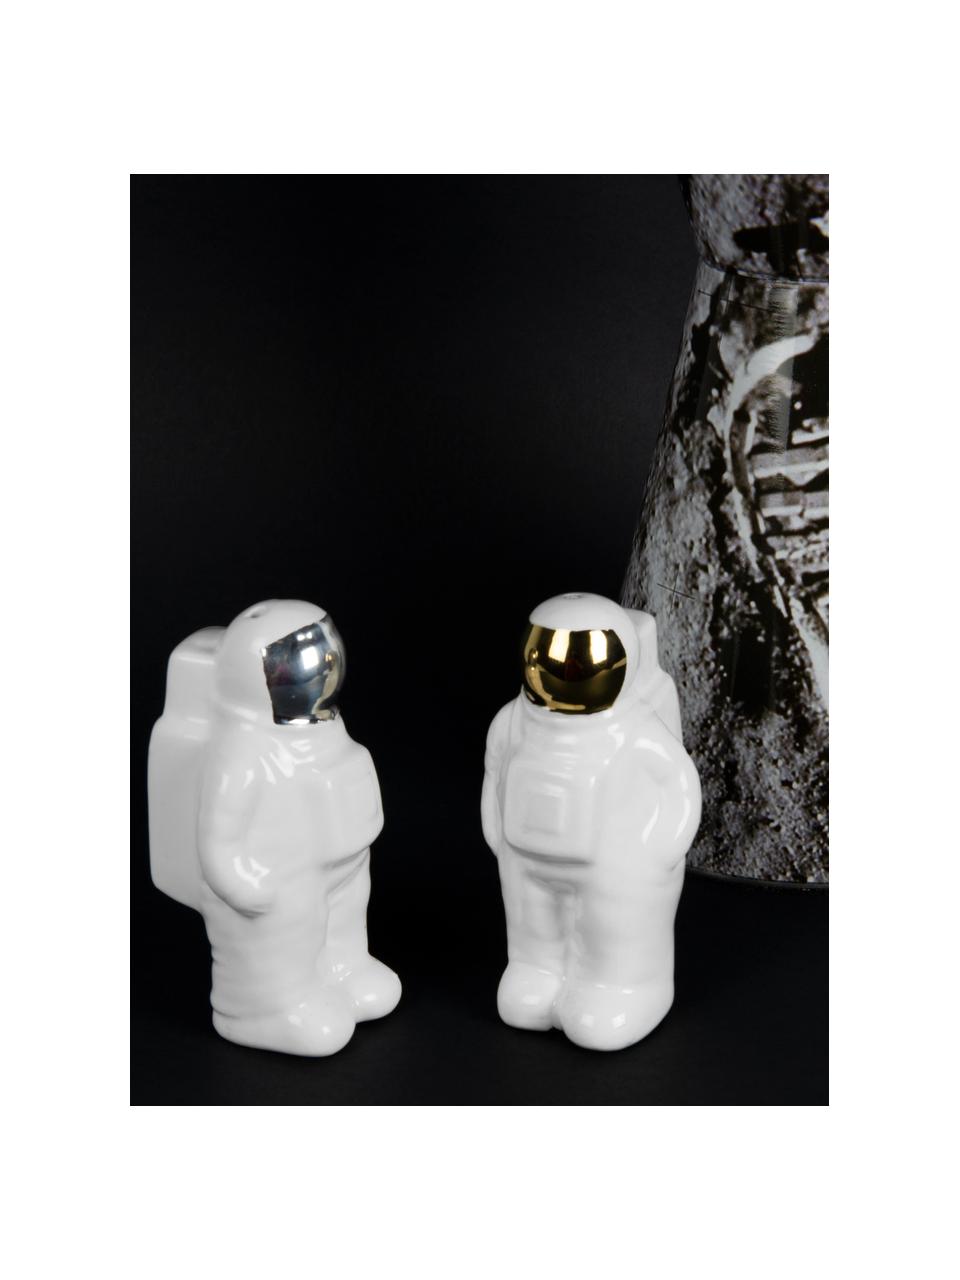 Salz- und Pfefferstreuer Astronaut aus Porzellan in Gold/Silber, 2er-Set, Porzellan, Weiß, Silberfarben, Goldfarben, 6 x 9 cm